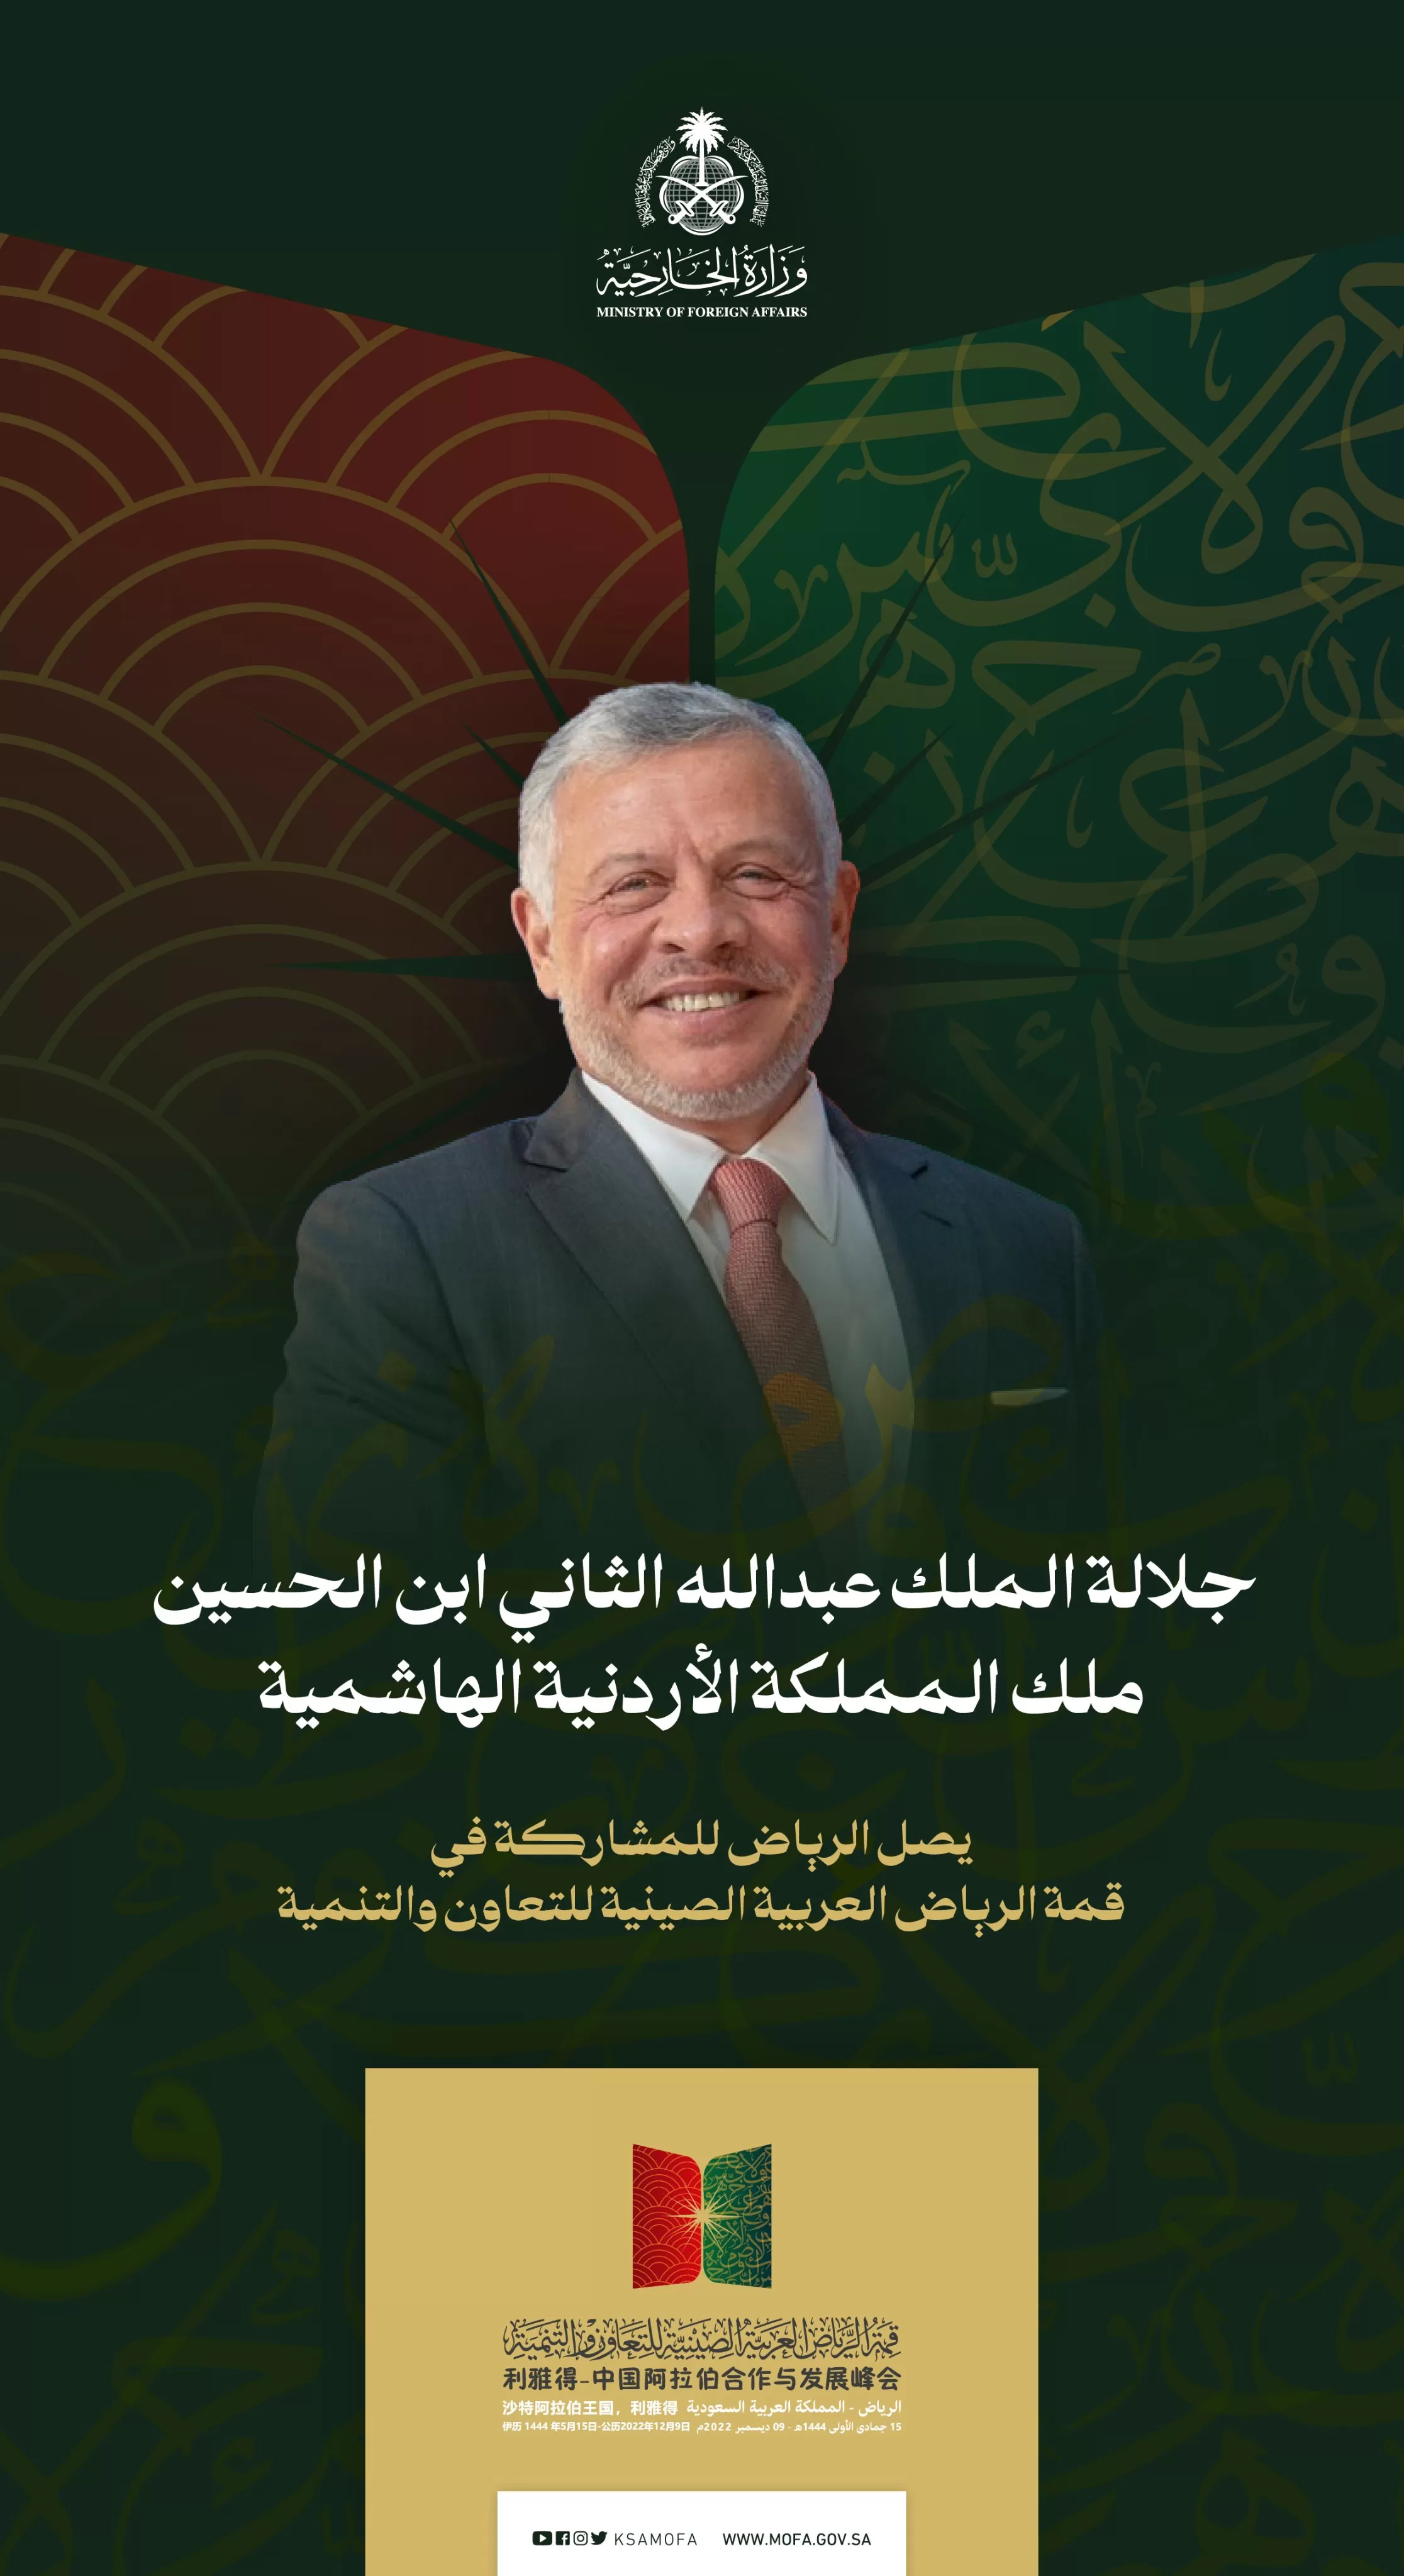 مدار الساعة,أخبار الأردن,اخبار الاردن,الملك عبدالله الثاني بن الحسين,وزارة الخارجية,المملكة الأردنية الهاشمية